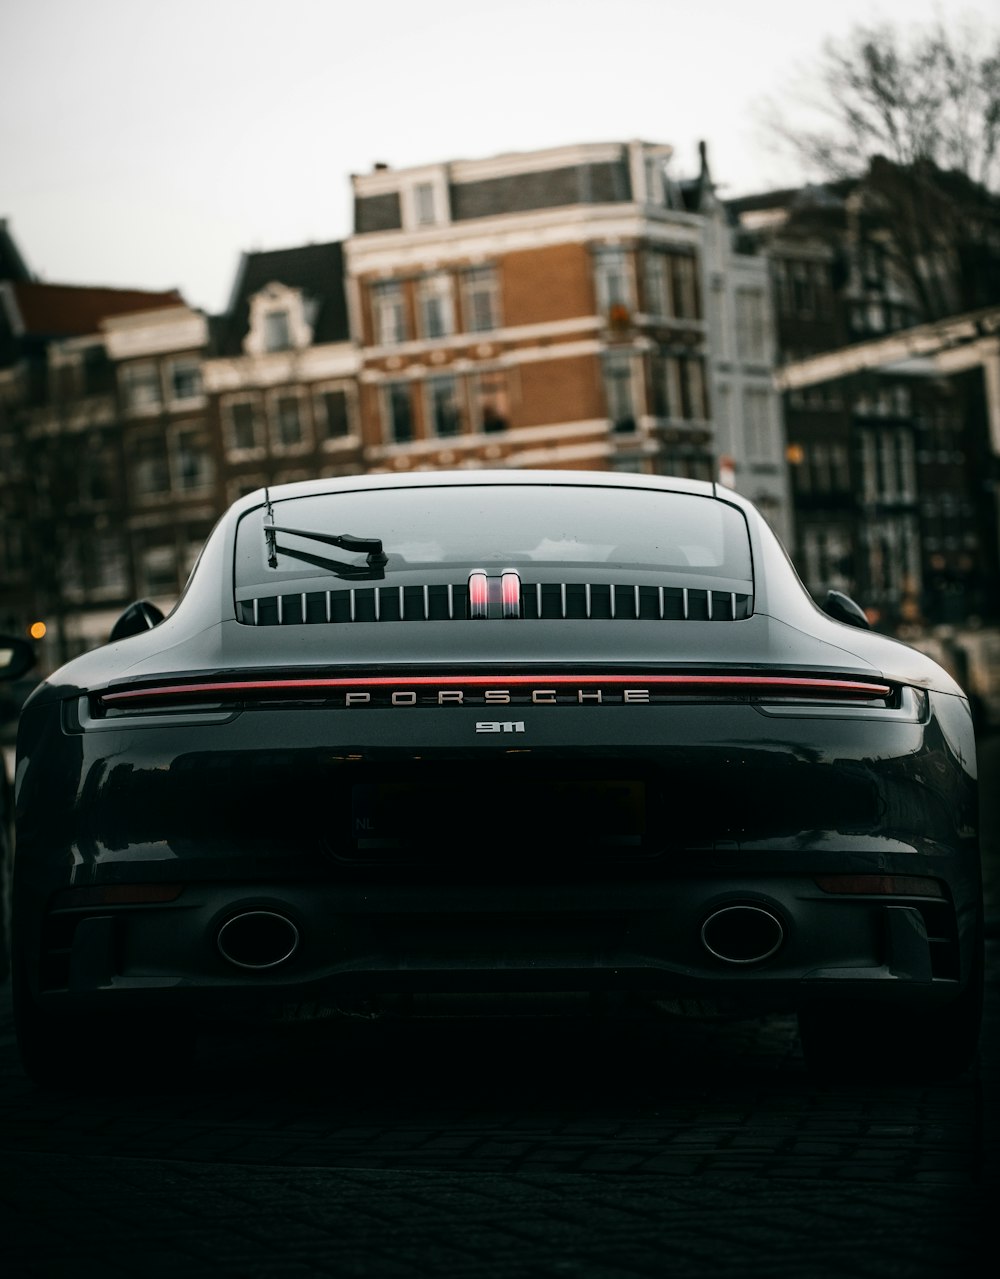 Porsche 911 negro aparcado en la calle durante el día